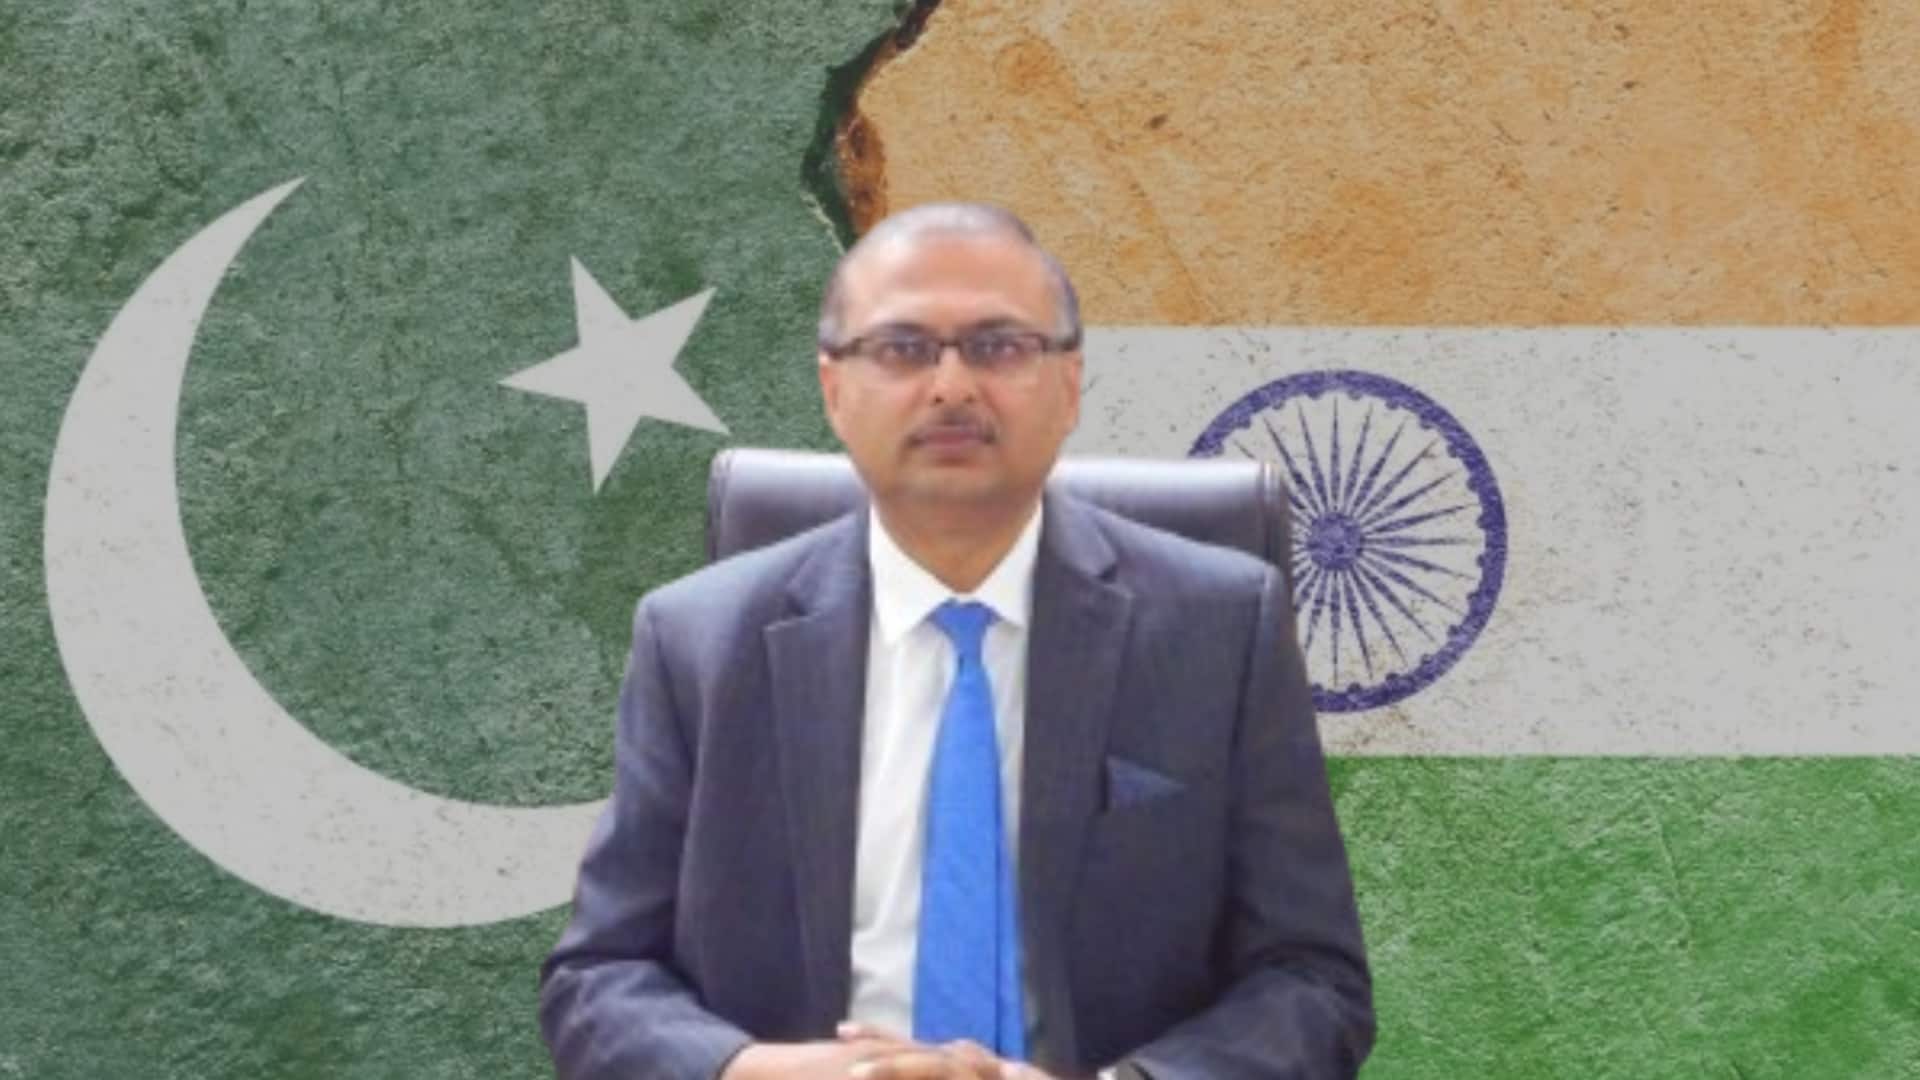 भारत से रिश्ते सुधारना चाहता है पाकिस्तान? दिल्ली में राजनयिक नियुक्त किया, राष्ट्रीय दिवस भी मनाएगा